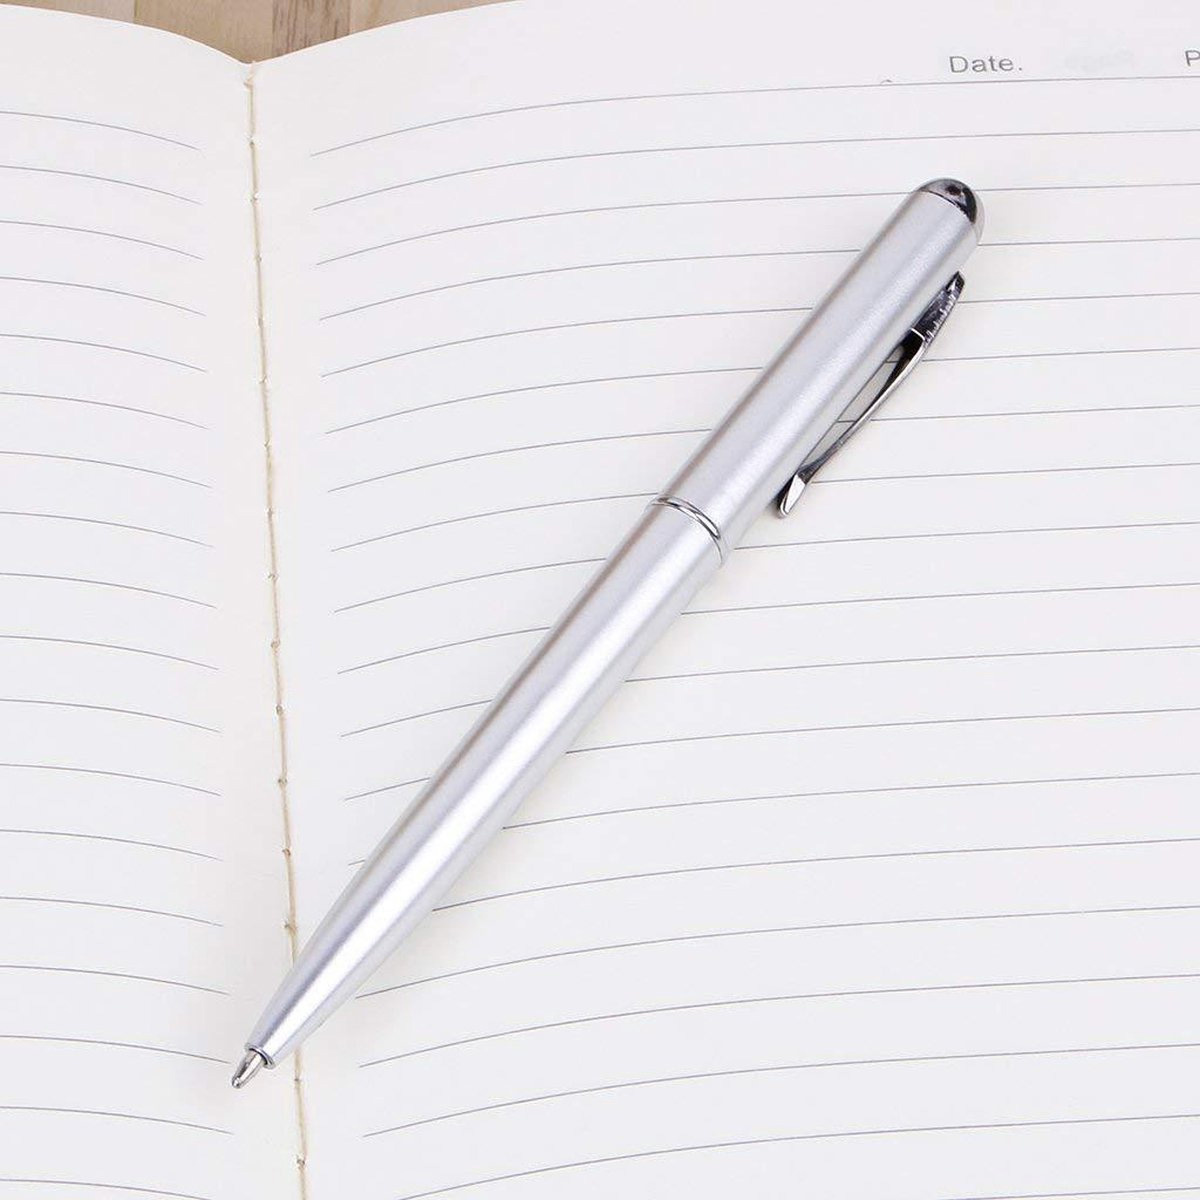 NoXx Geheimschirft Pen Onzichtbare Inkt Pen Met UV Lampje